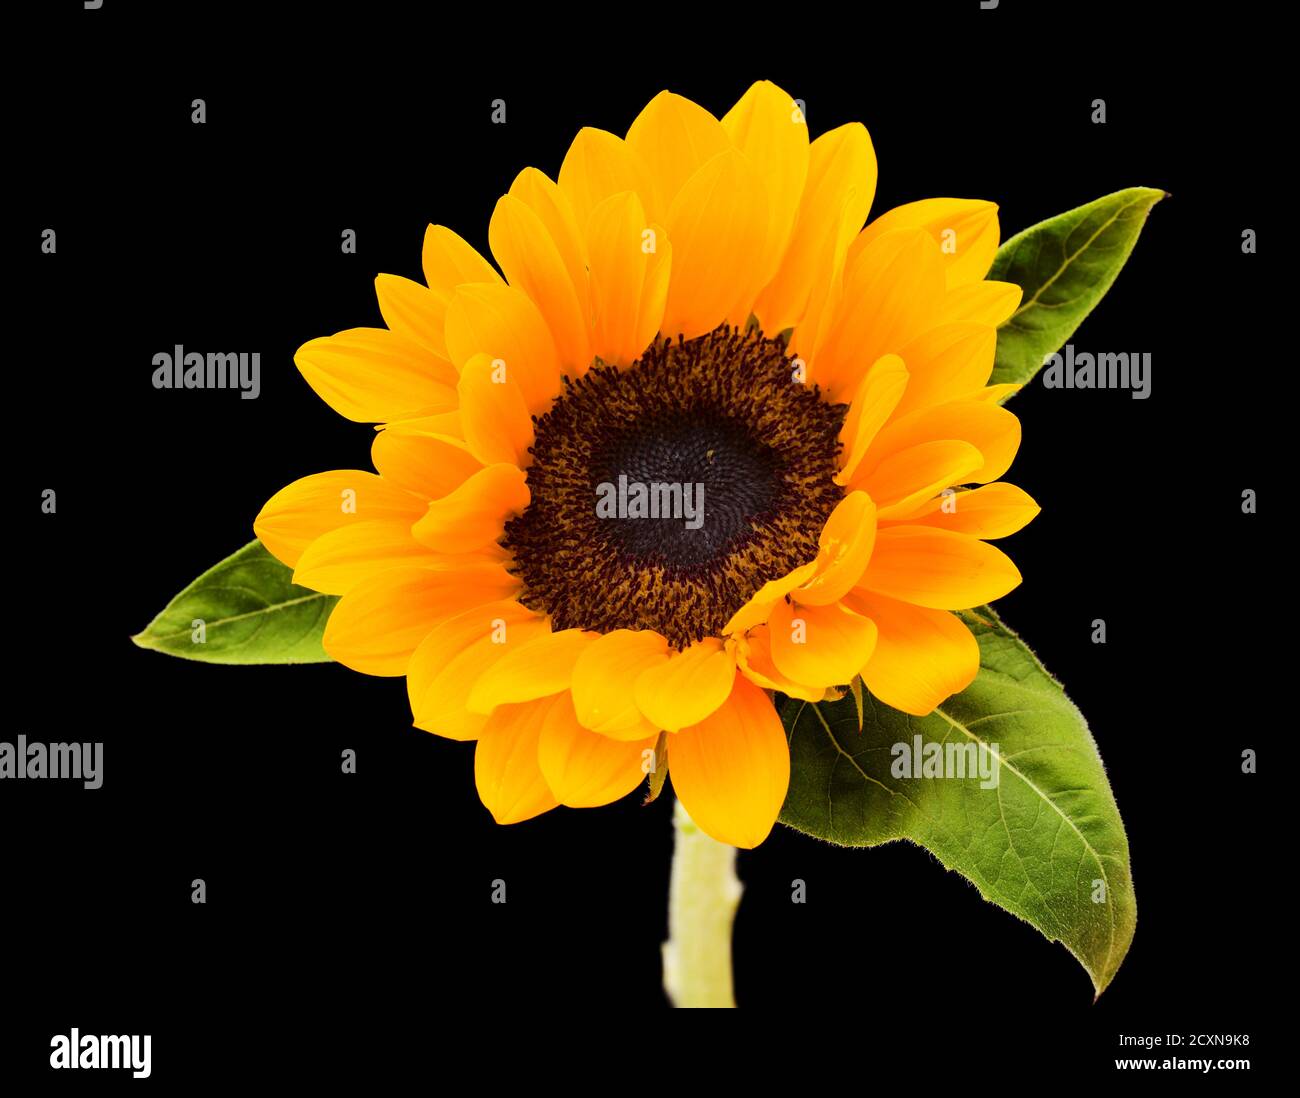 sunflower isolated on black background Stock Photo